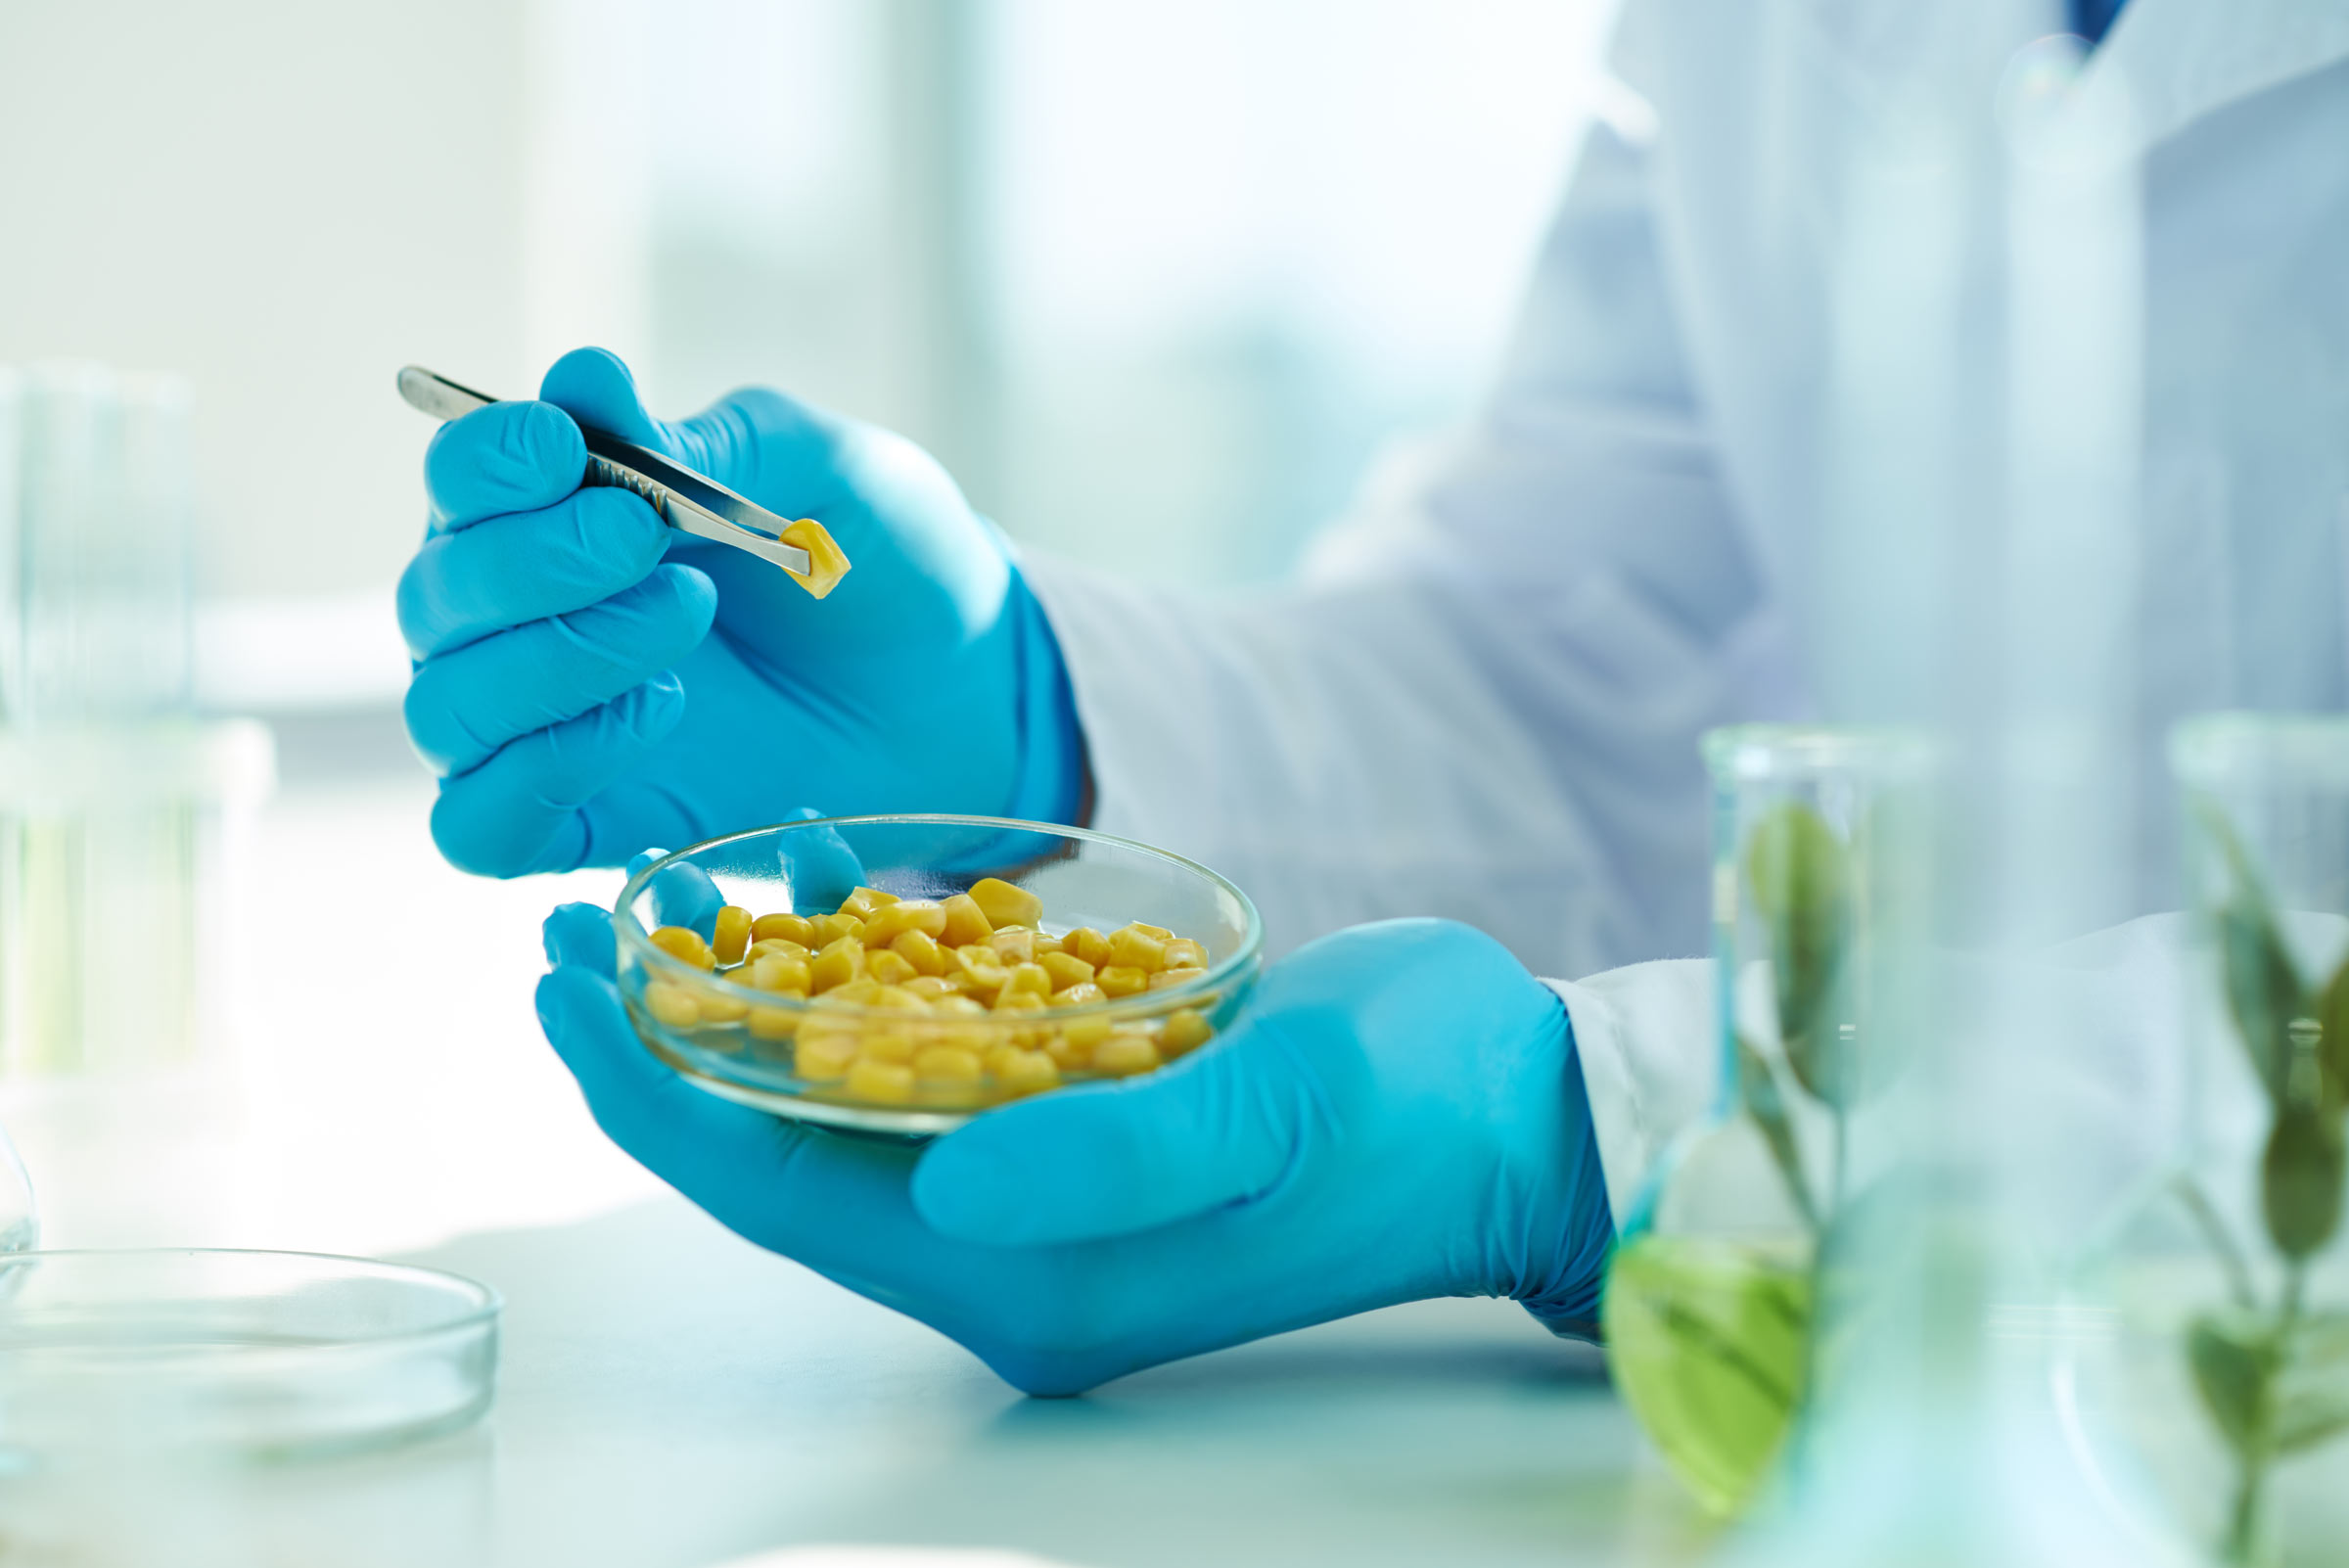 Качество продуктов тест. Лабораторные исследования продуктов питания. Лабораторные исследования качества продуктов питания. Биотехнология продуктов питания и пищевая безопасность. Тестирование пищевых продуктов.